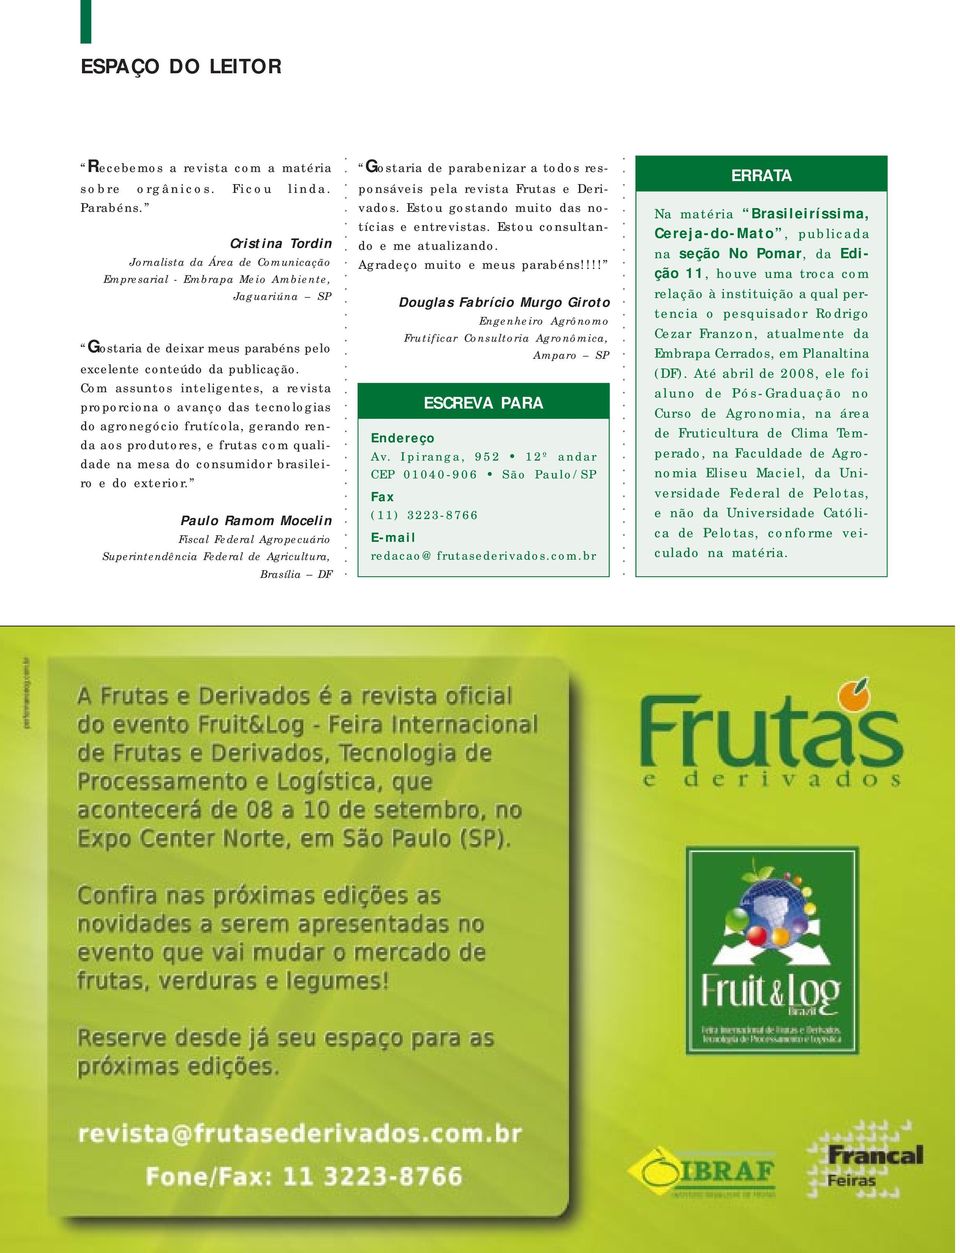 Com assuntos inteligentes, a revista proporciona o avanço das tecnologias do agronegócio frutícola, gerando renda aos produtores, e frutas com qualidade na mesa do consumidor brasileiro e do exterior.